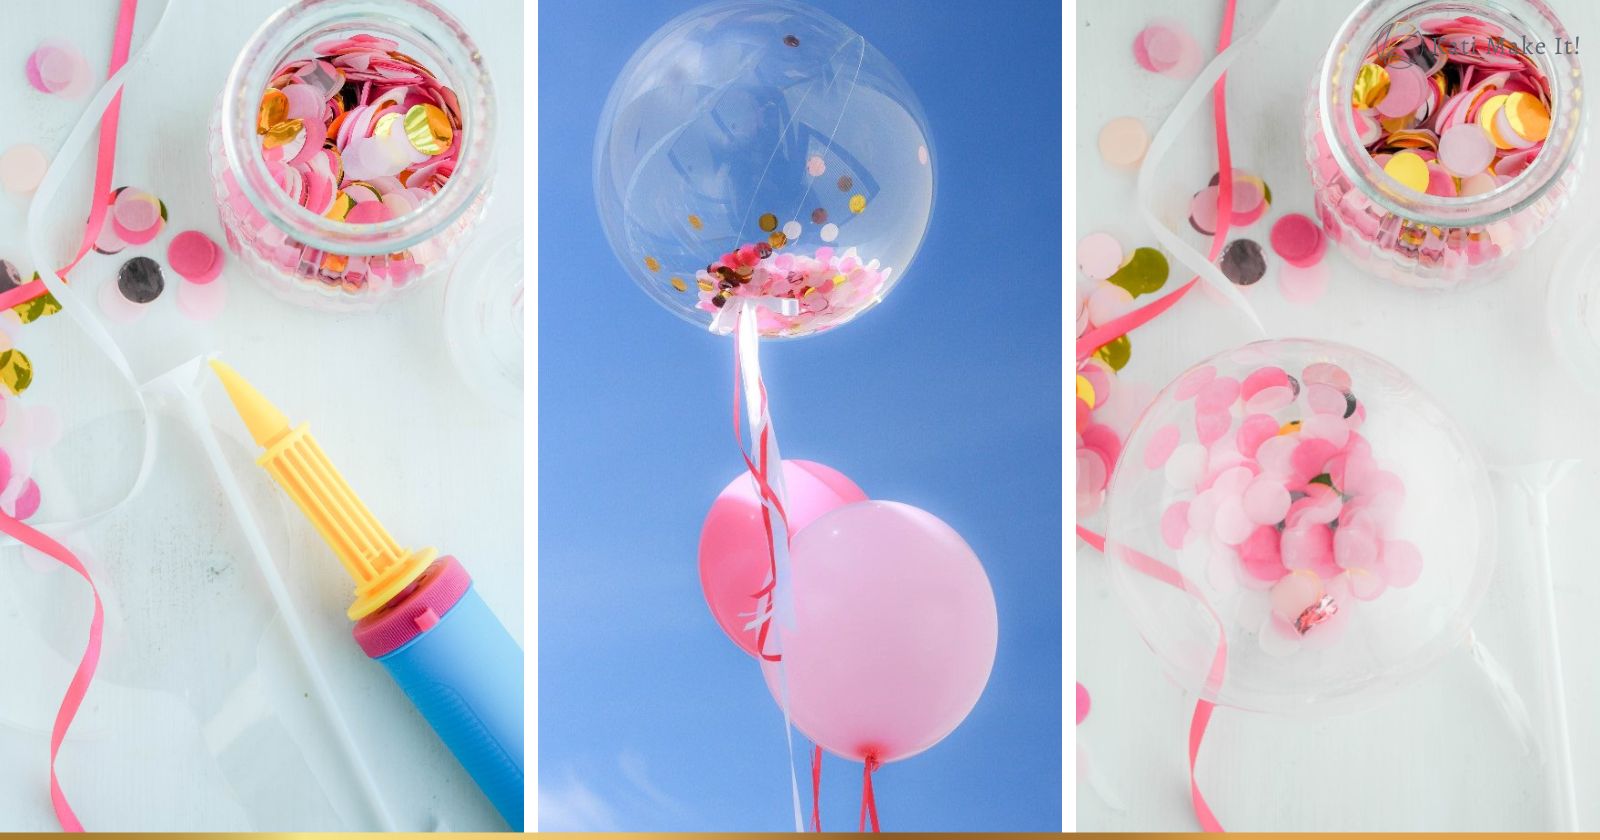 Konfetti Ballon:🎈🎈🎈 einfache Anleitung für gefüllte Ballons mit Konfetti. Dekoidee für Kindergeburtstag, Geburtstag, Hochzeit oder Mädelsparty.